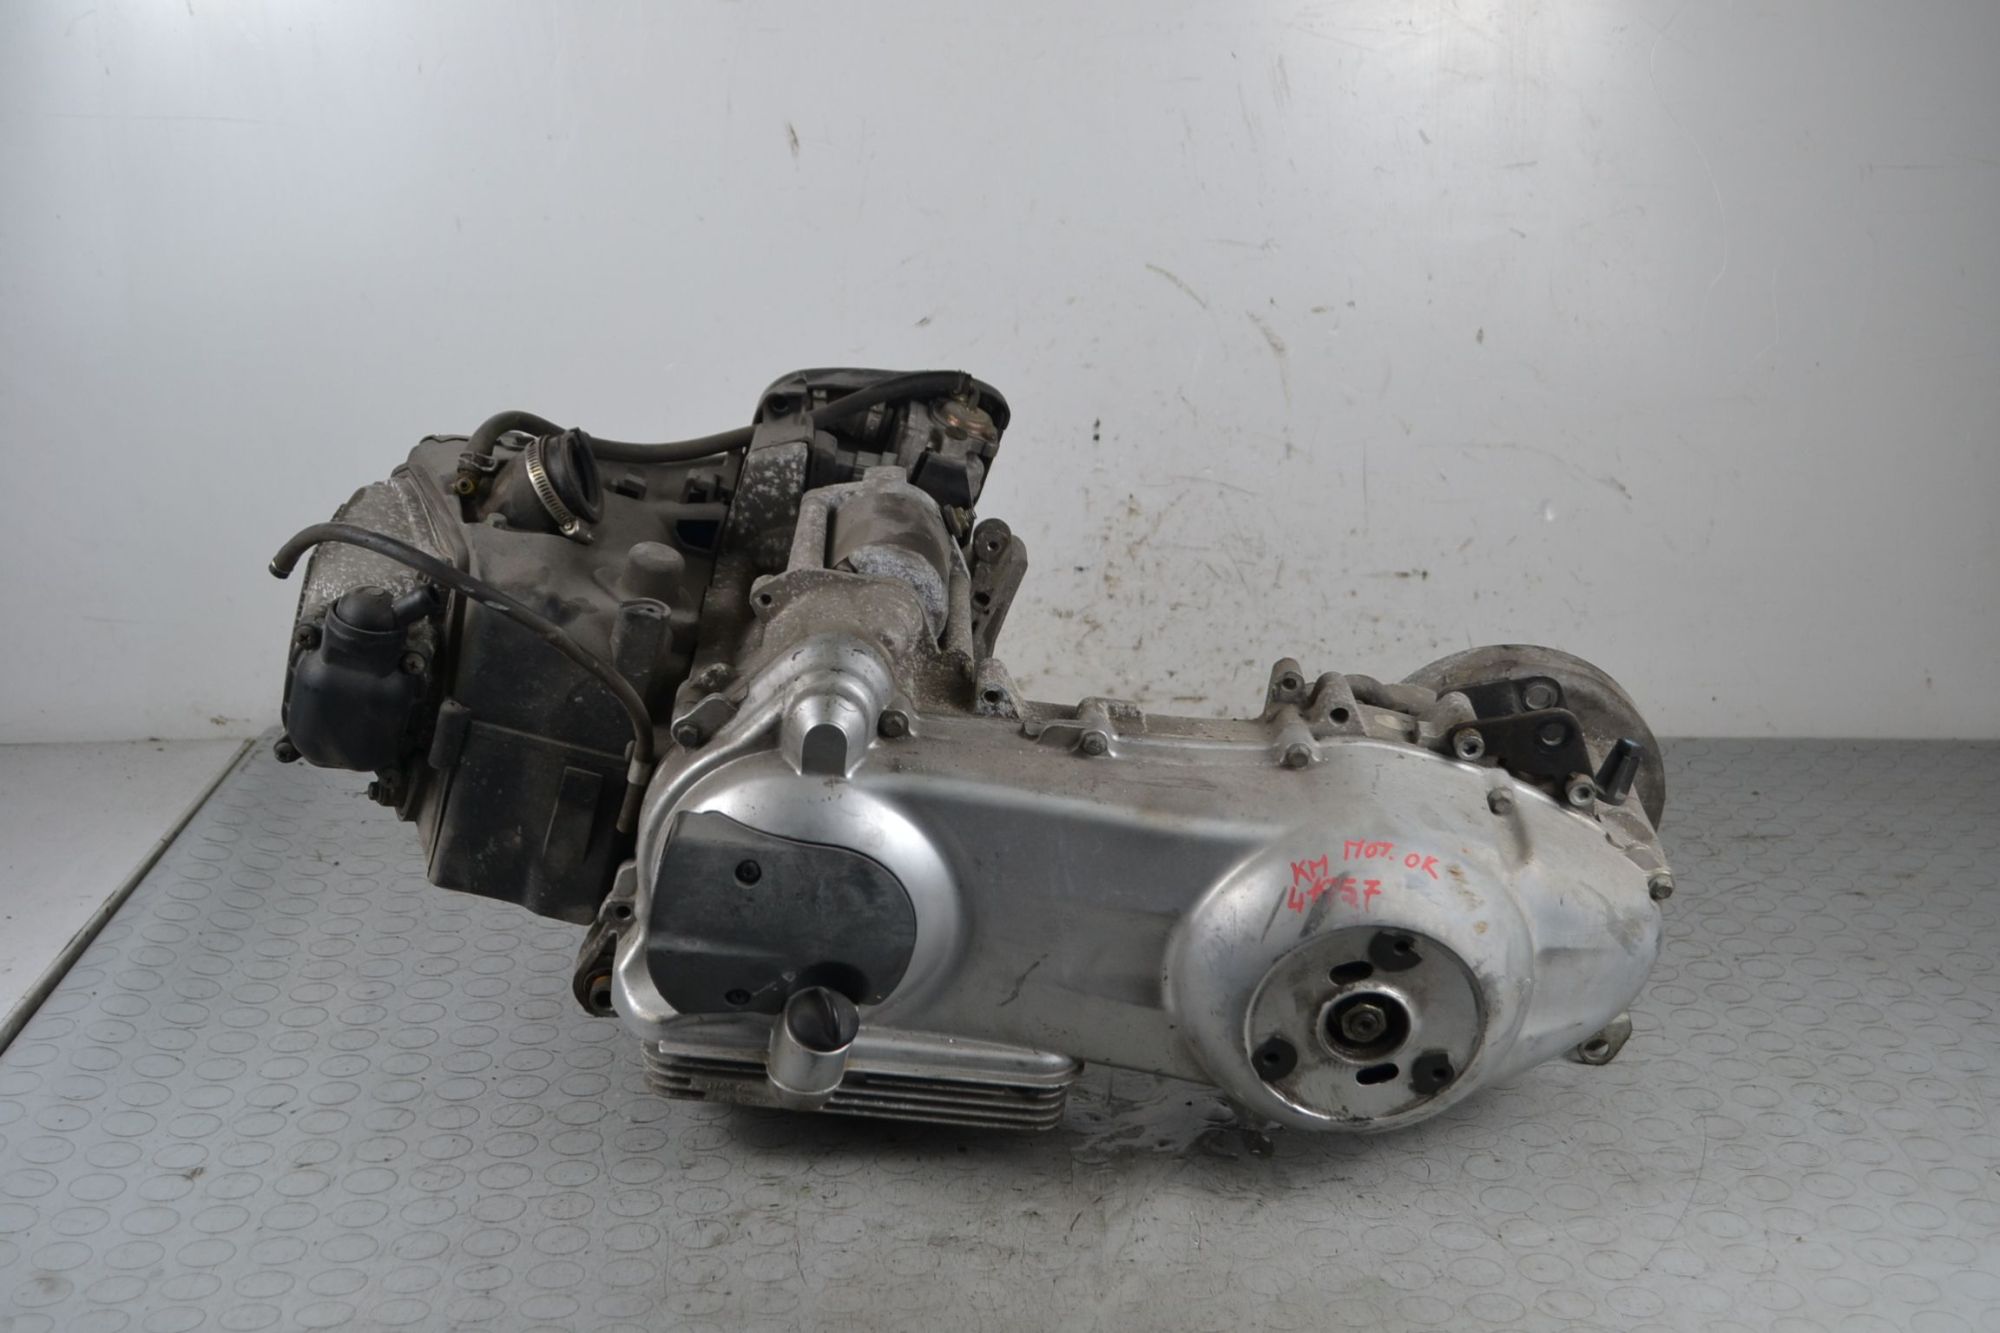 Blocco motore Piaggio Liberty 150 4T Dal 2009 al 2013 Cod motore M672M N serie 1343  1711183443025